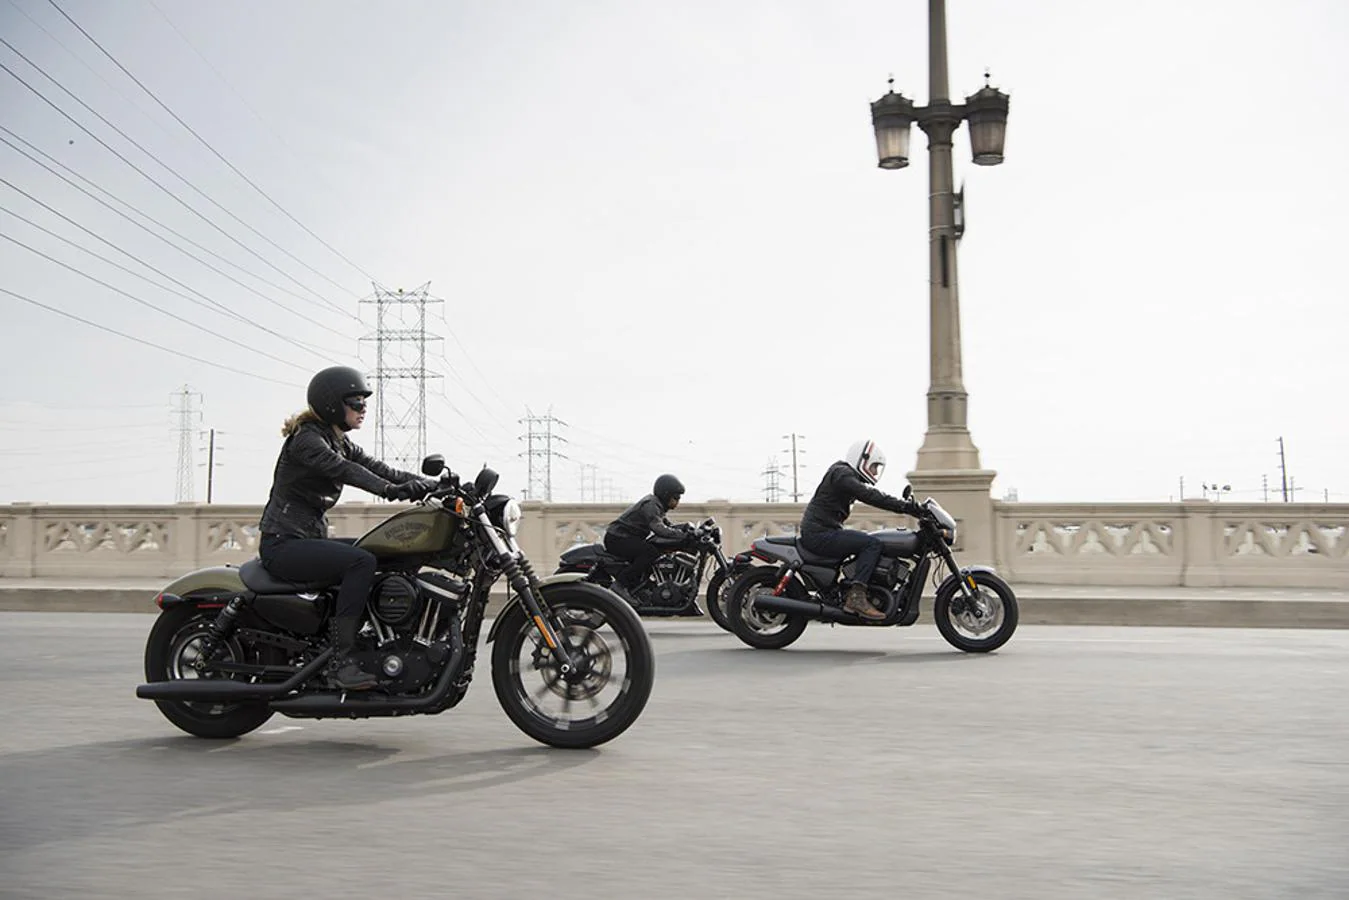 Harley-Davidson Street Rod 2017. Este nuevo modelo ha sido diseñado bajo la influencia Dark Custon que tanto gusta a Harley-Davidson. Encontramos una pequeña cúpula entre la horquilla y pletinas negras, dándole un toque de empaque y agresividad a la Street Rod 2017